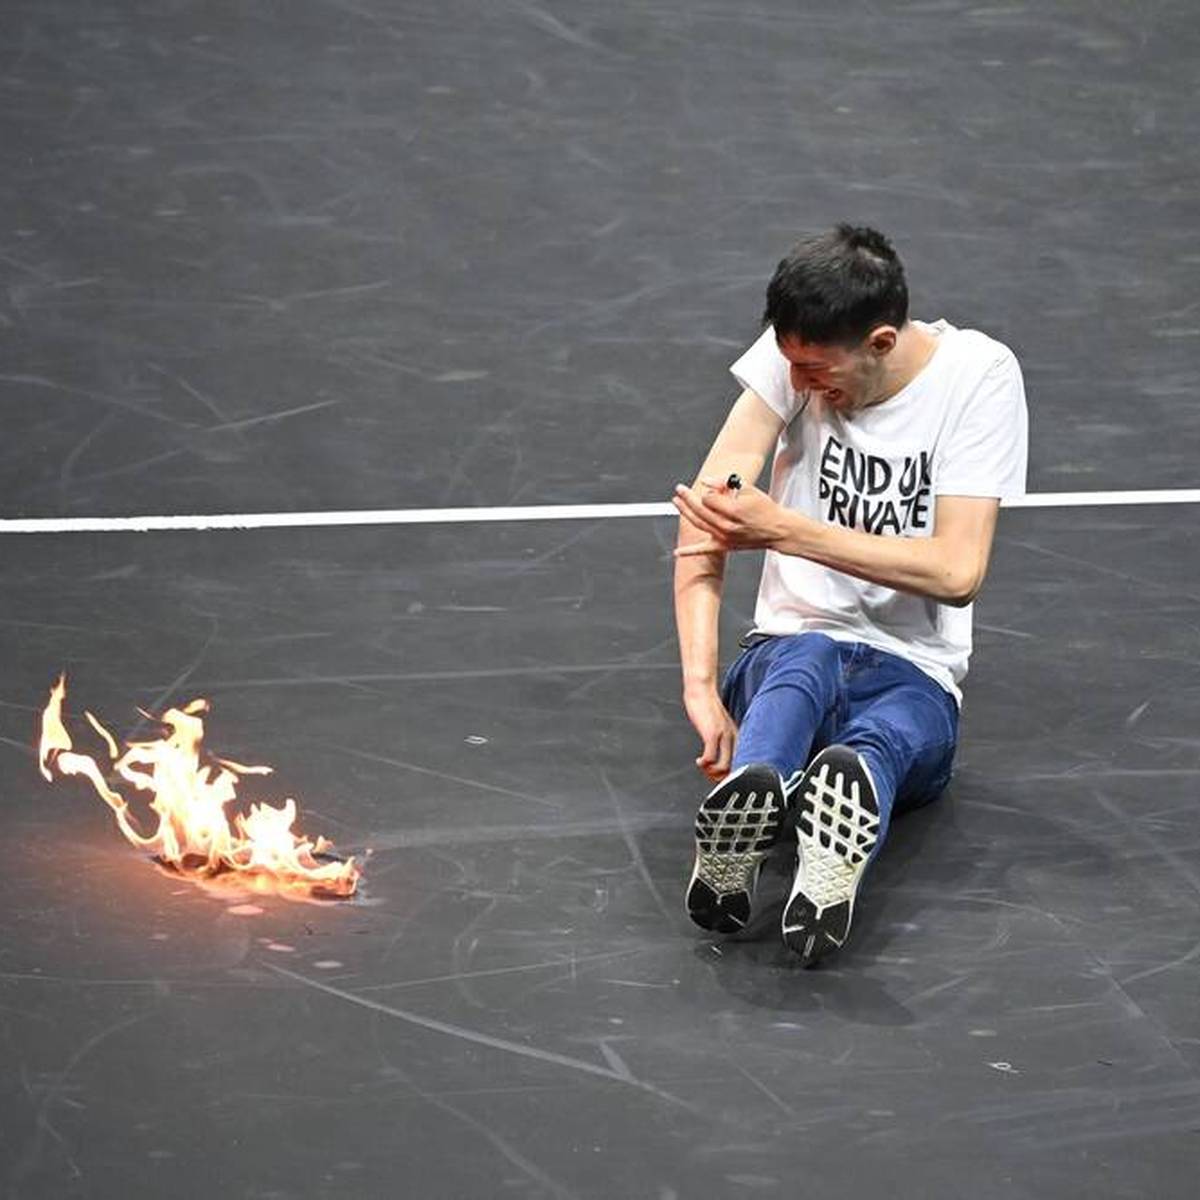 Ein Klima-Aktivist sorgt vor dem Match von Roger Federer beim Laver Cup mit einem Feuer für Aufsehen. Der gefährliche Protest geht jedoch nach hinten los.